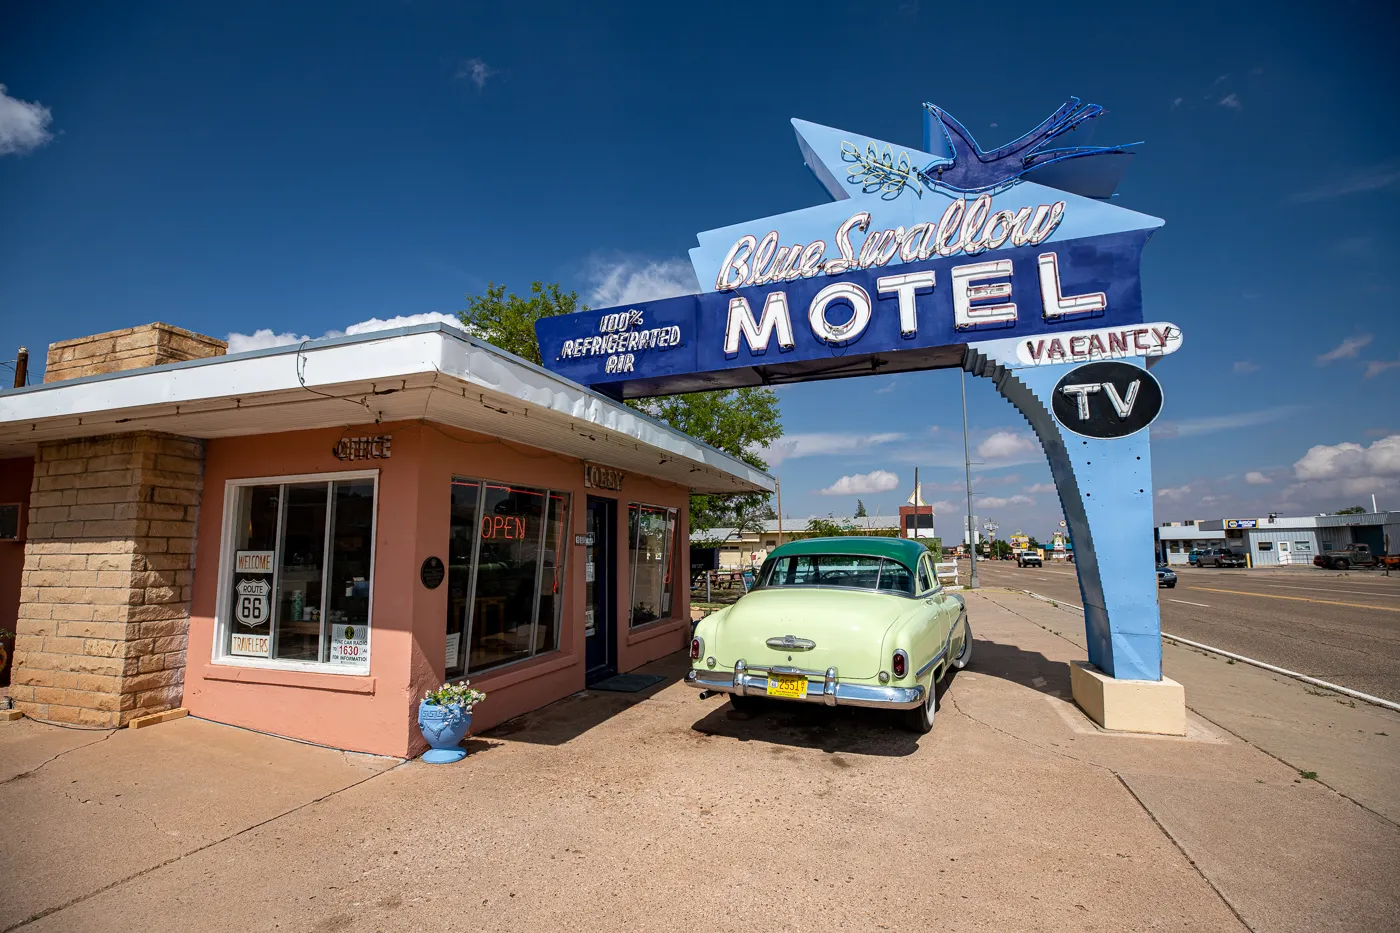 Blue Swallow Motel in Tucumcari, New Mexico (Route 66 Motel)